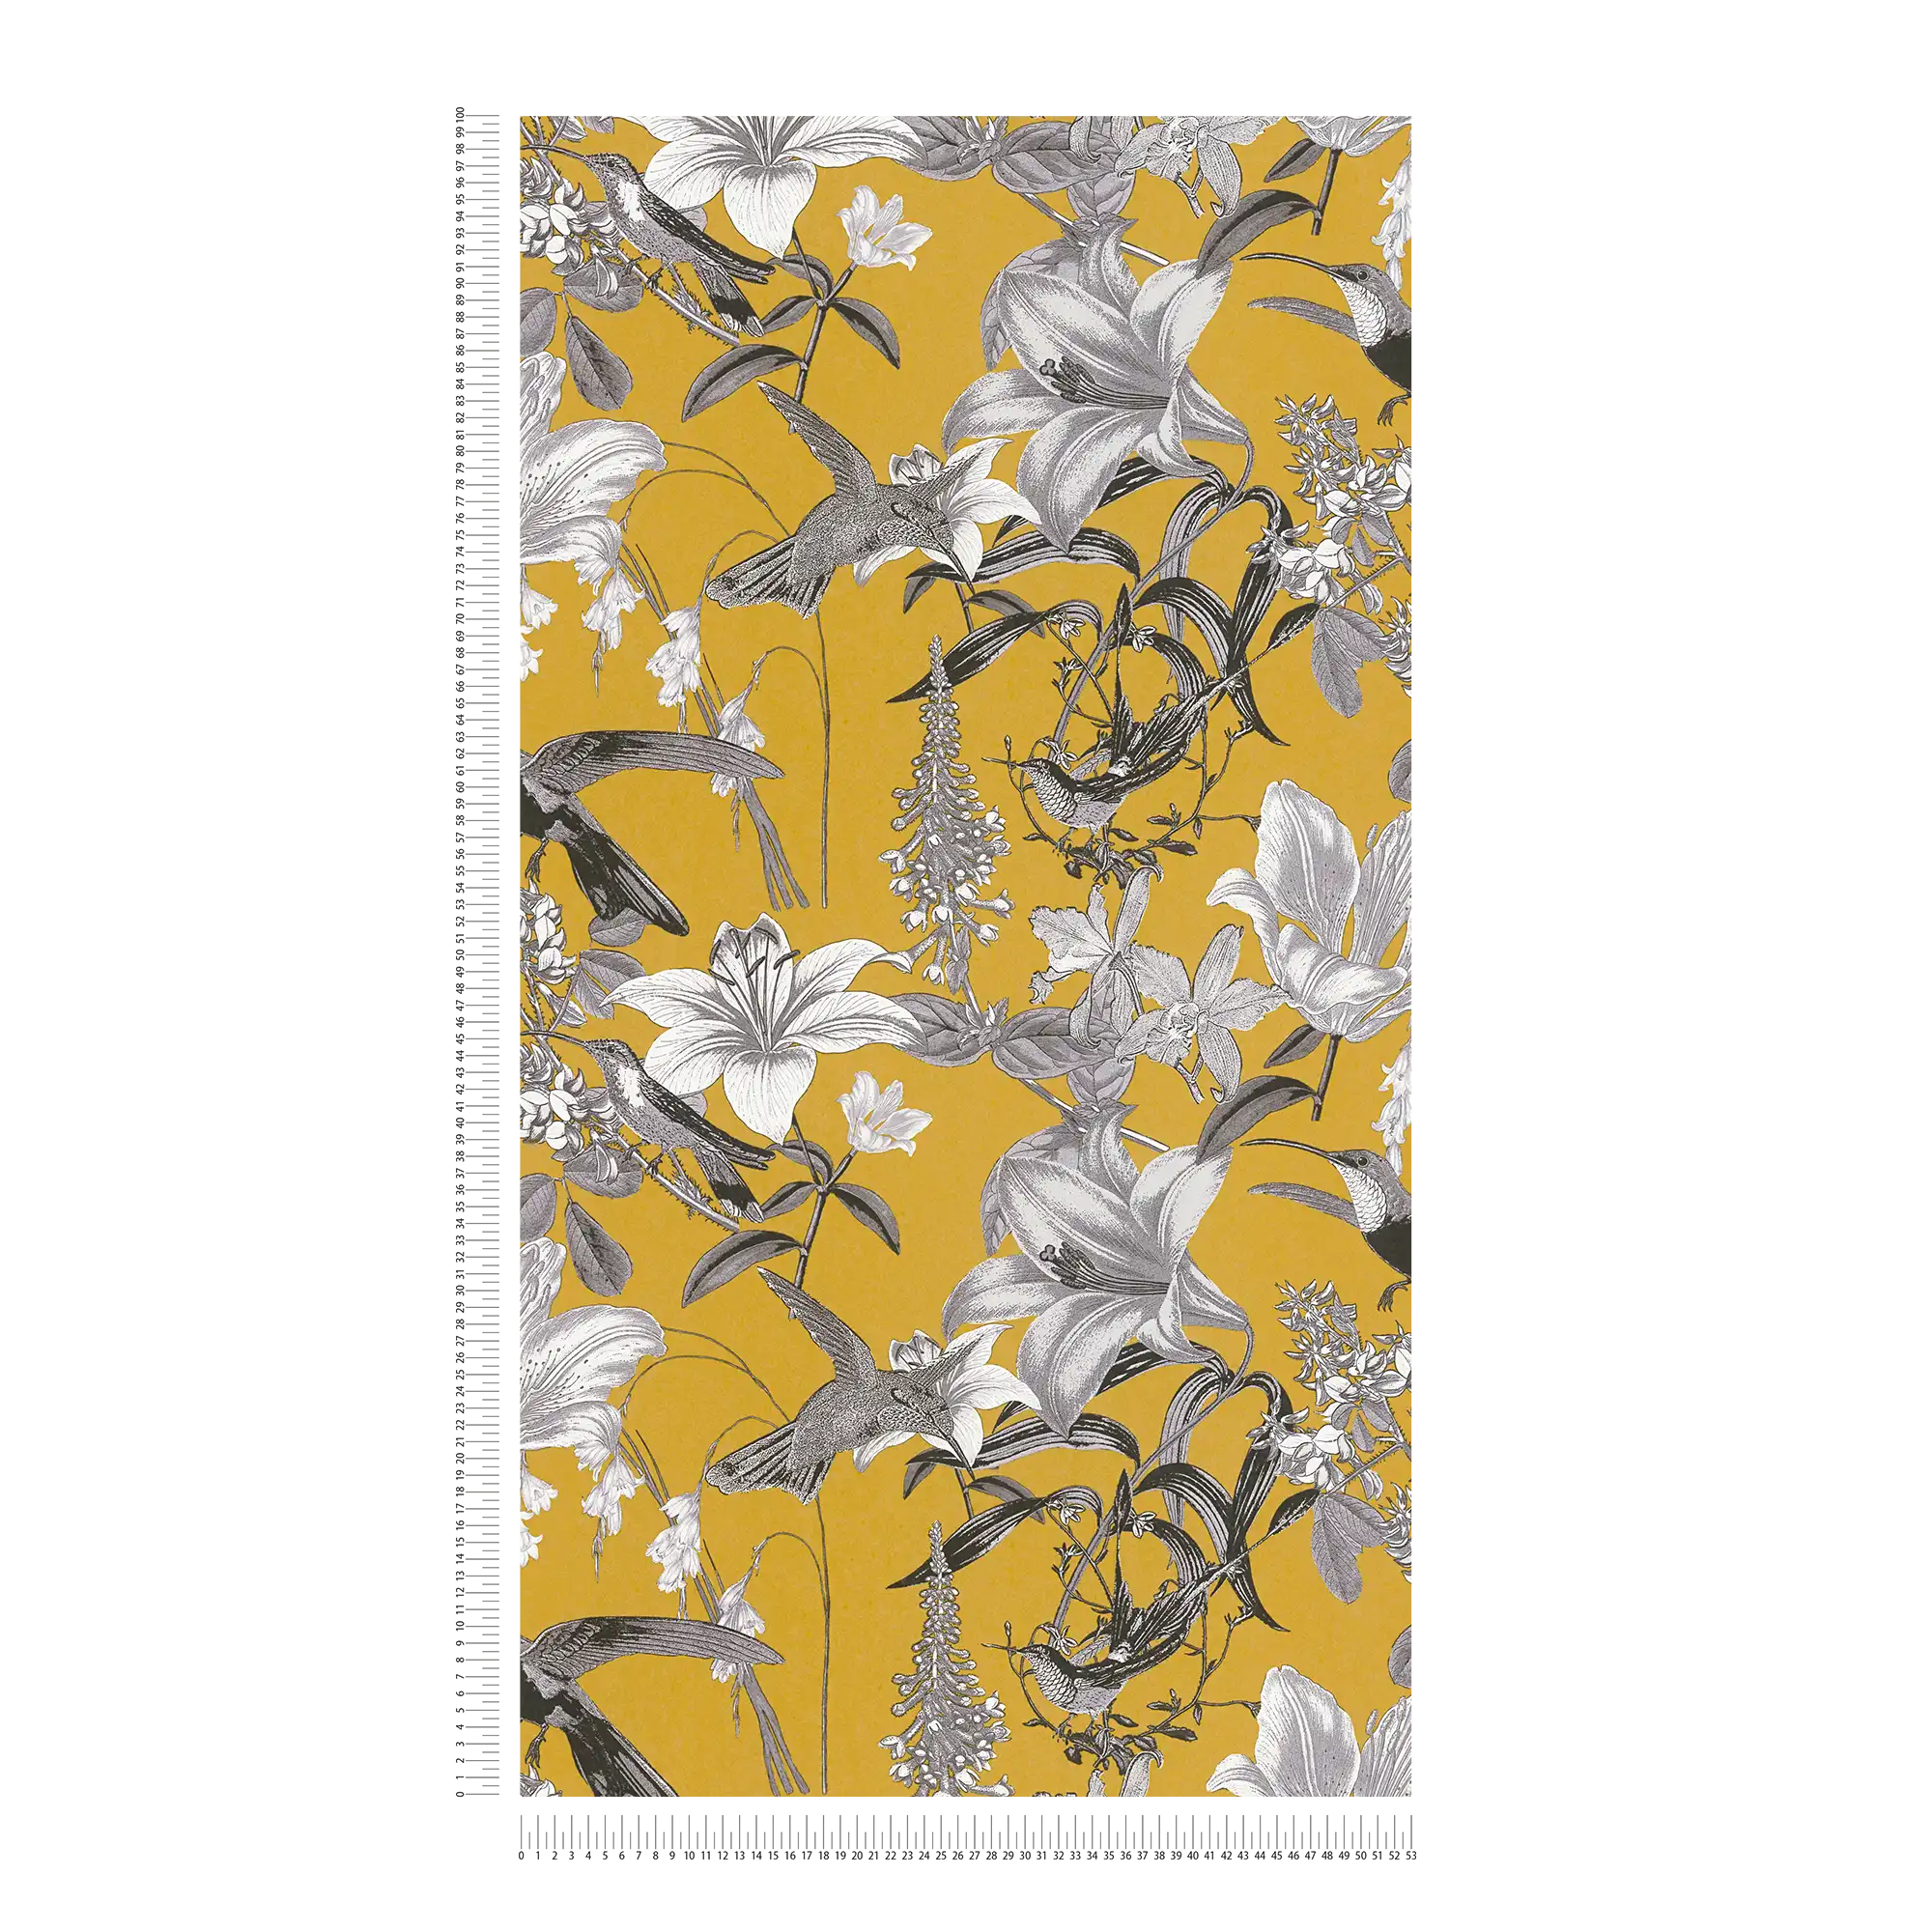             Carta da parati floreale giallo senape con fiori e motivi di colibrì - giallo, grigio, nero
        